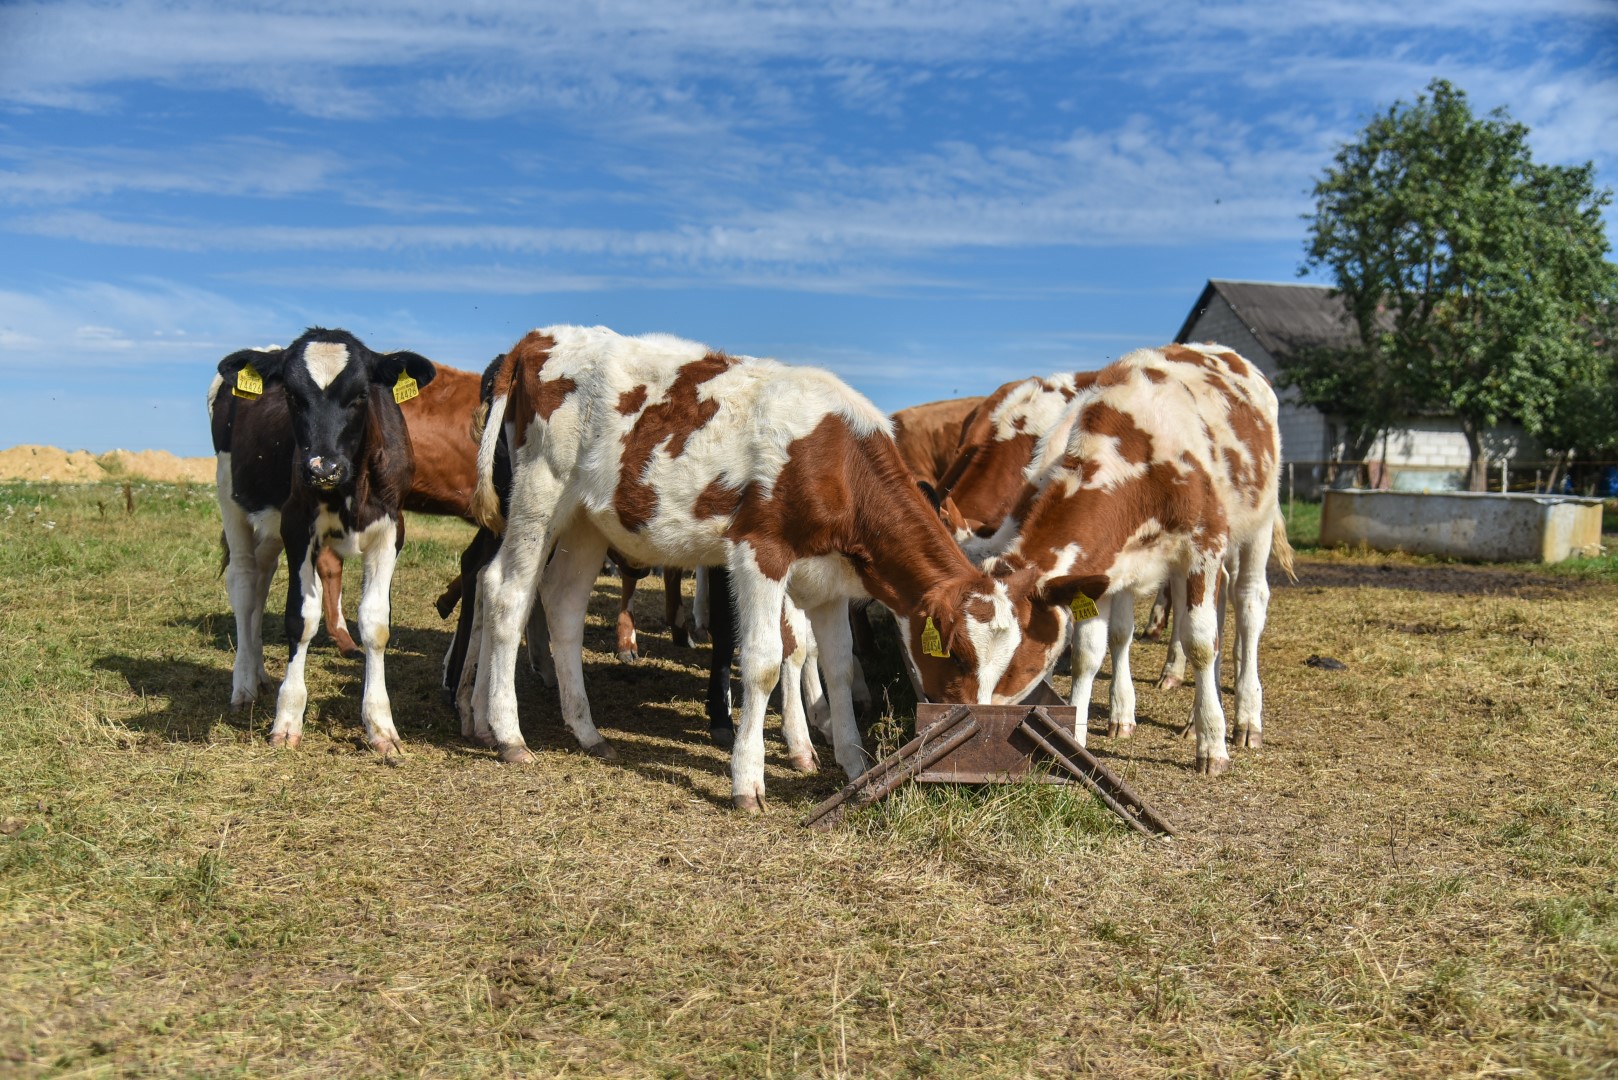 Panevėžio rajono laukuose besigananti karvė tampa vis didesne retenybe. Vien per metus šiame krašte užsidarė net 10 proc. pieno ūkių.